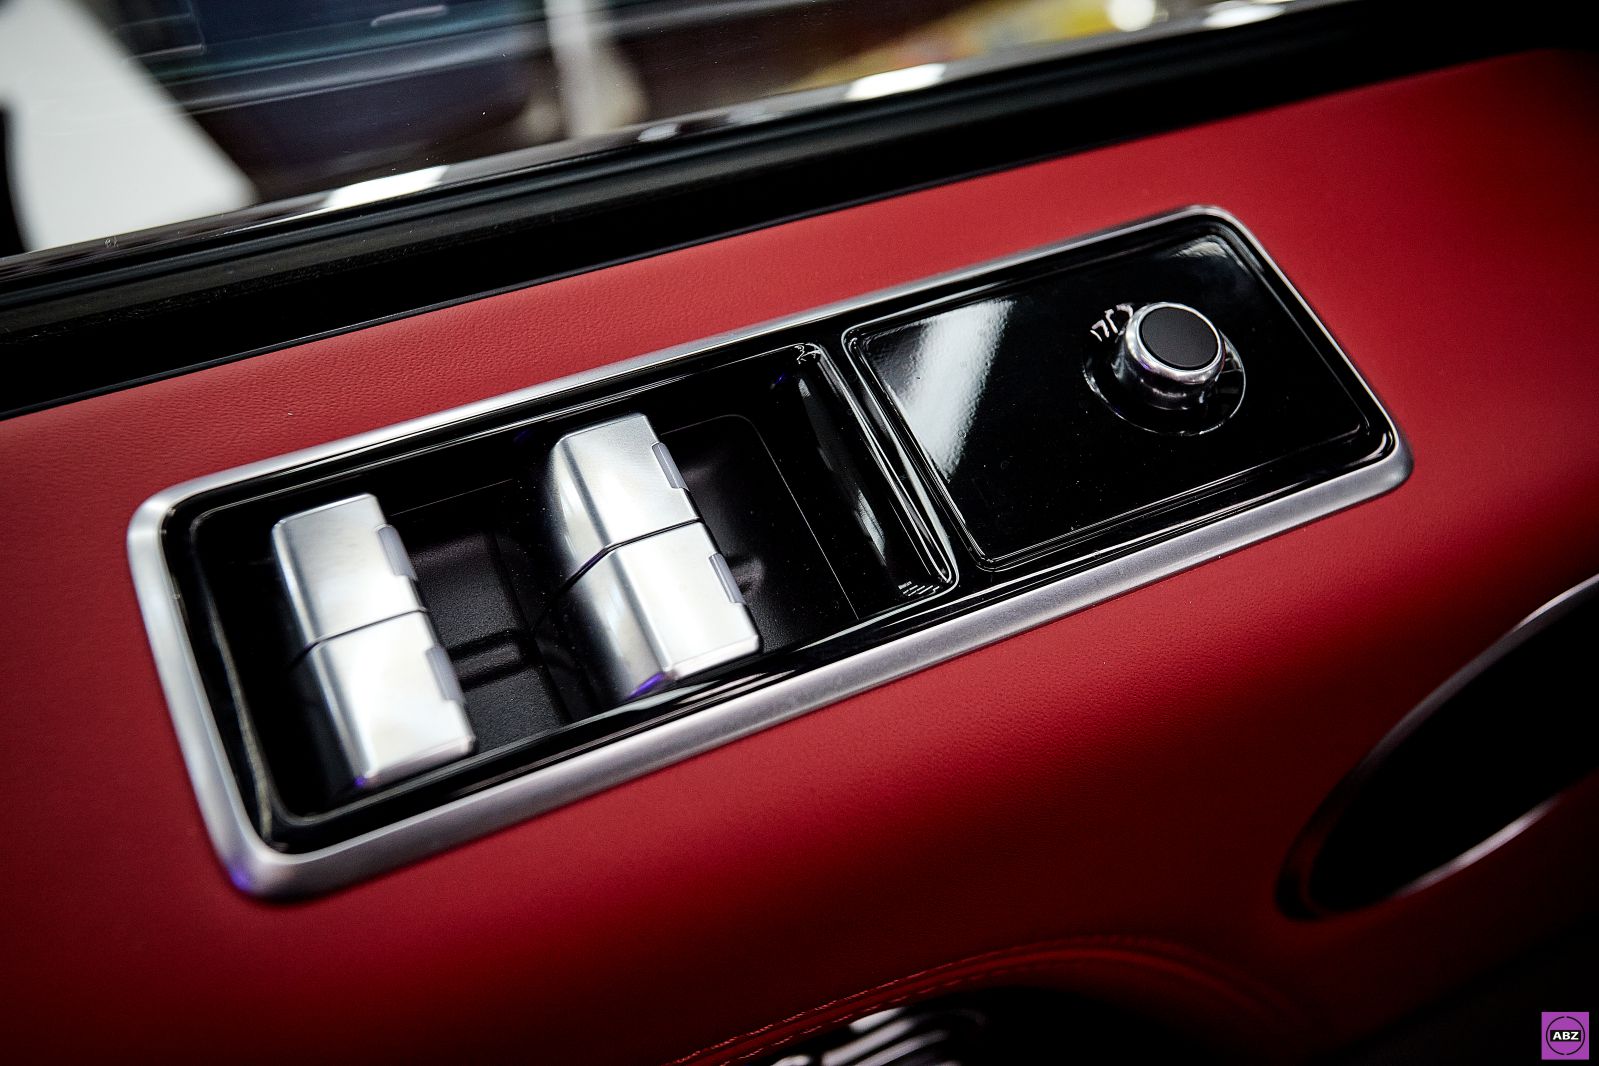 Фото Темно-вишневый Range Rover Sport: защита и стайлинг от АвтоБезЗабот